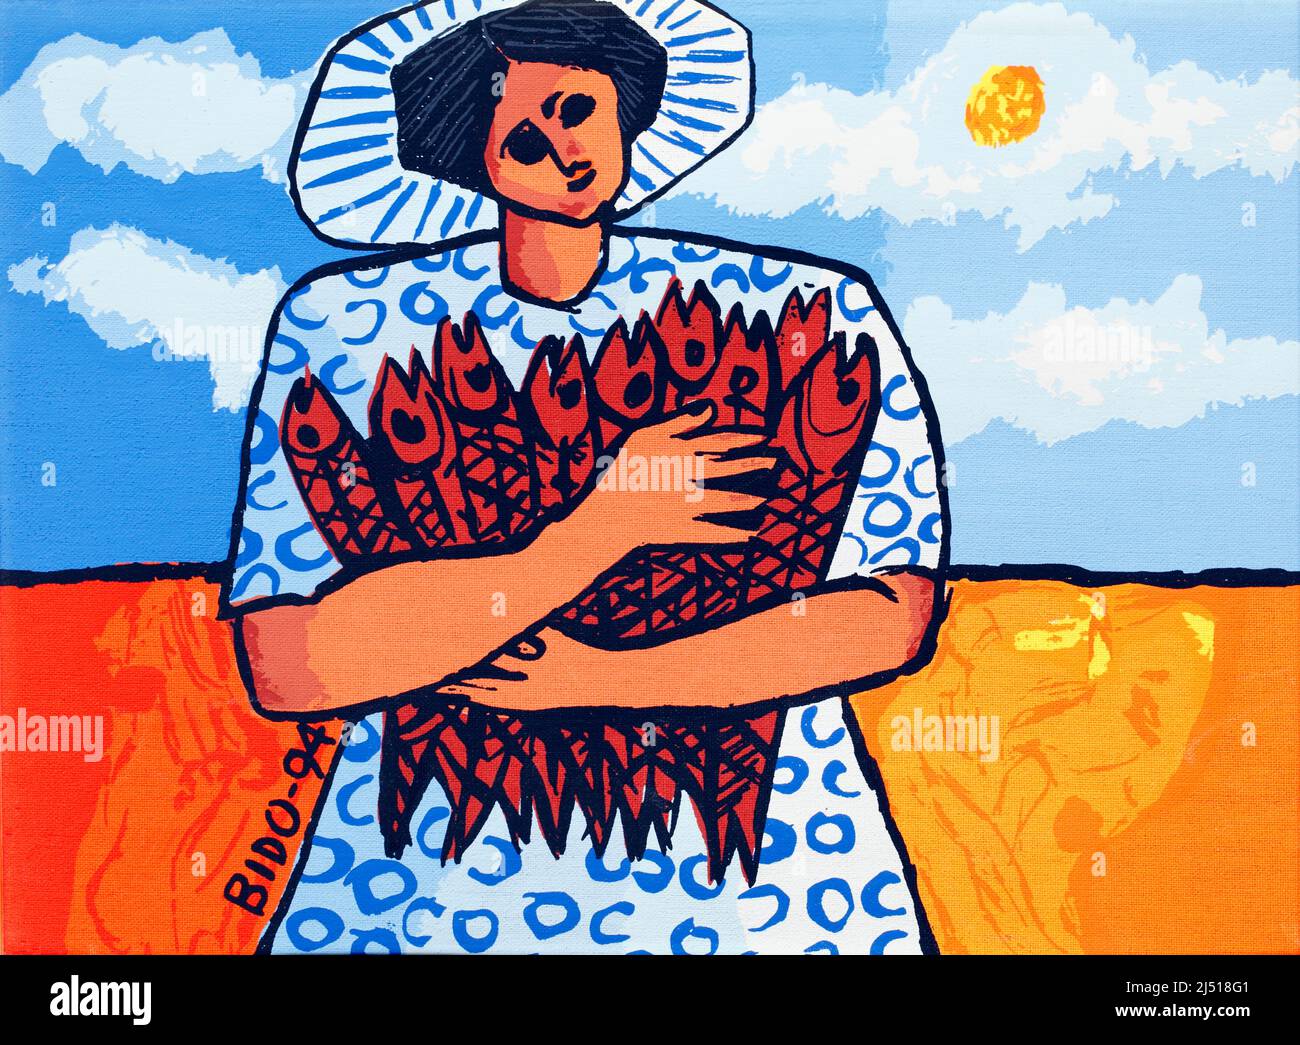 Leinwand-Siebdruck von Candido Bido, typisch für seinen Stil, mit leuchtenden Farbstoffen, der Sonne und einer Frau aus der Dominikanischen Republik, die hier 9 Fische hält Stockfoto